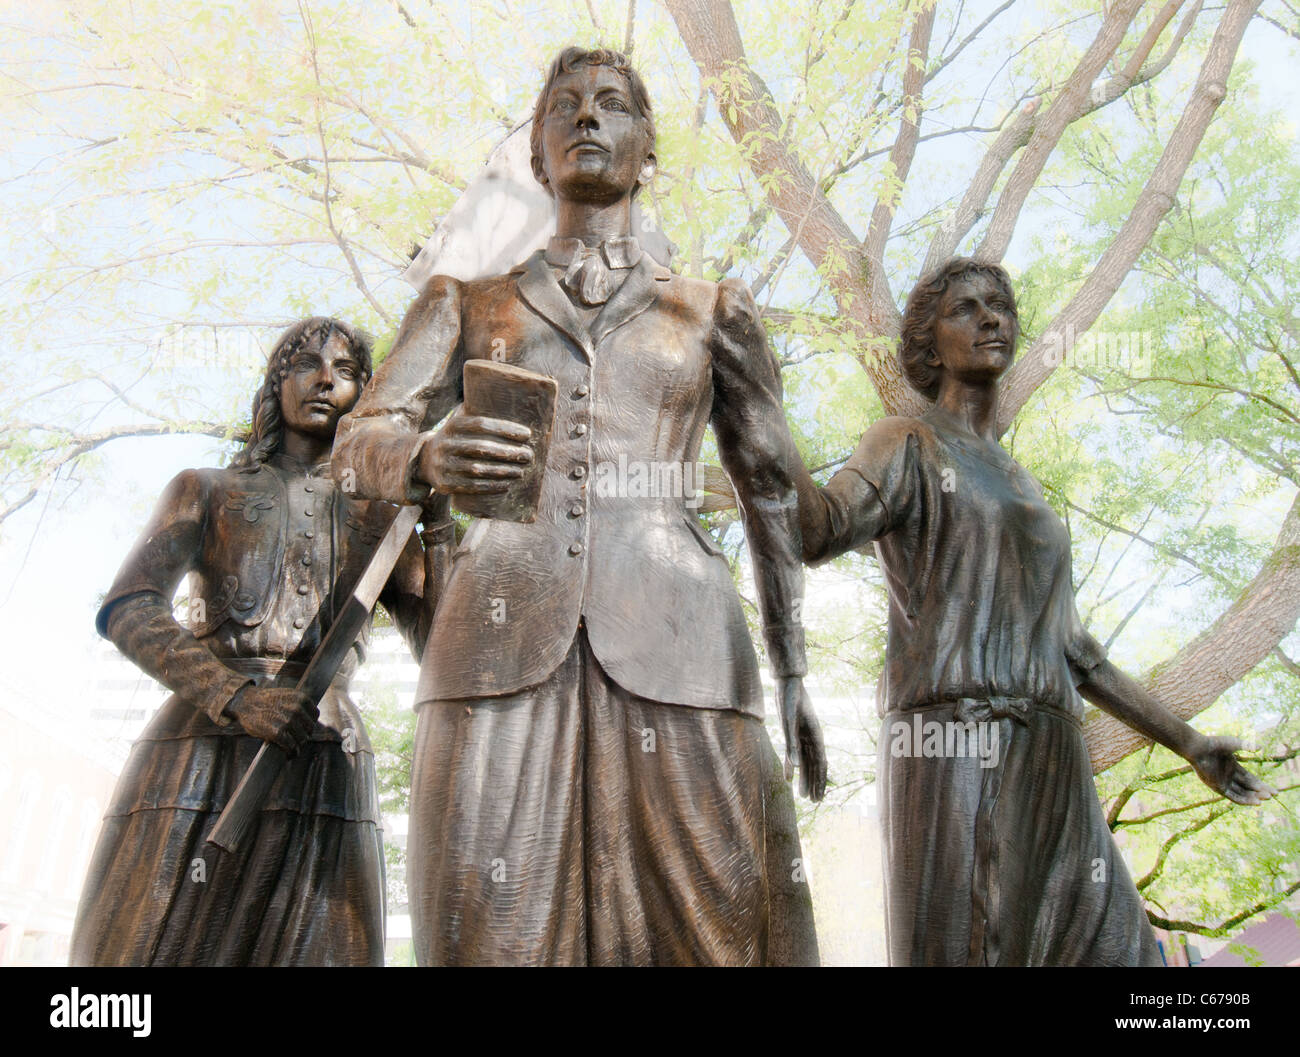 Tennessee Woman Suffrage Memorial, geformt in 2006 von Alan Lequire, Marktplatz in Knoxville, Tennessee, USA Stockfoto